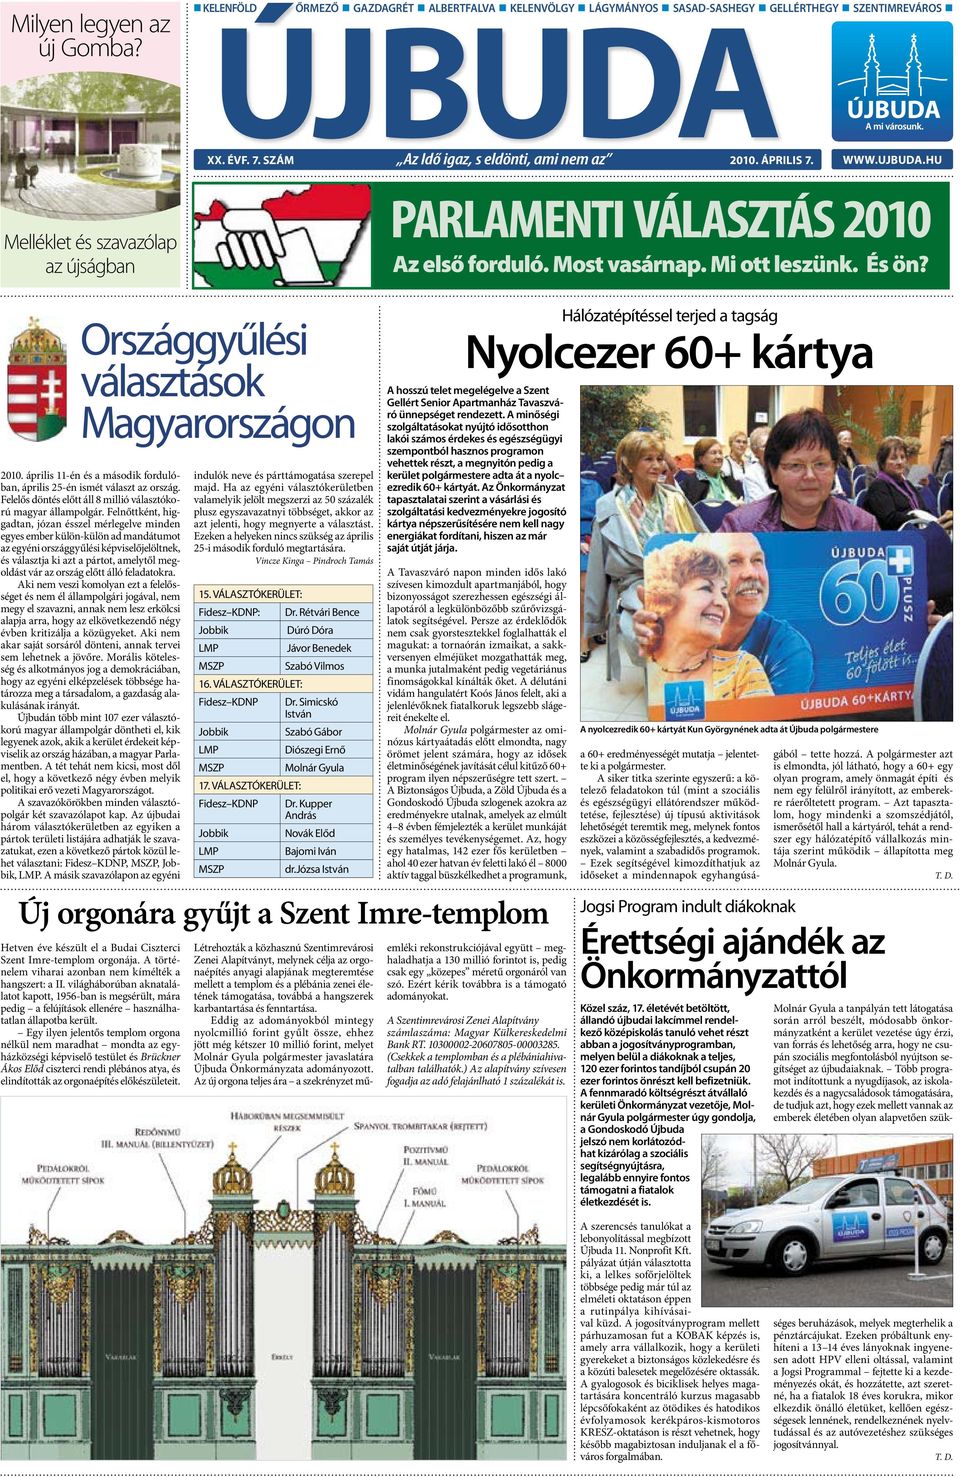 Országgyűlési választások Magyarországon 2010. április 11-én és a második fordulóban, április 25-én ismét választ az ország. Felelős döntés előtt áll 8 millió választókorú magyar állampolgár.